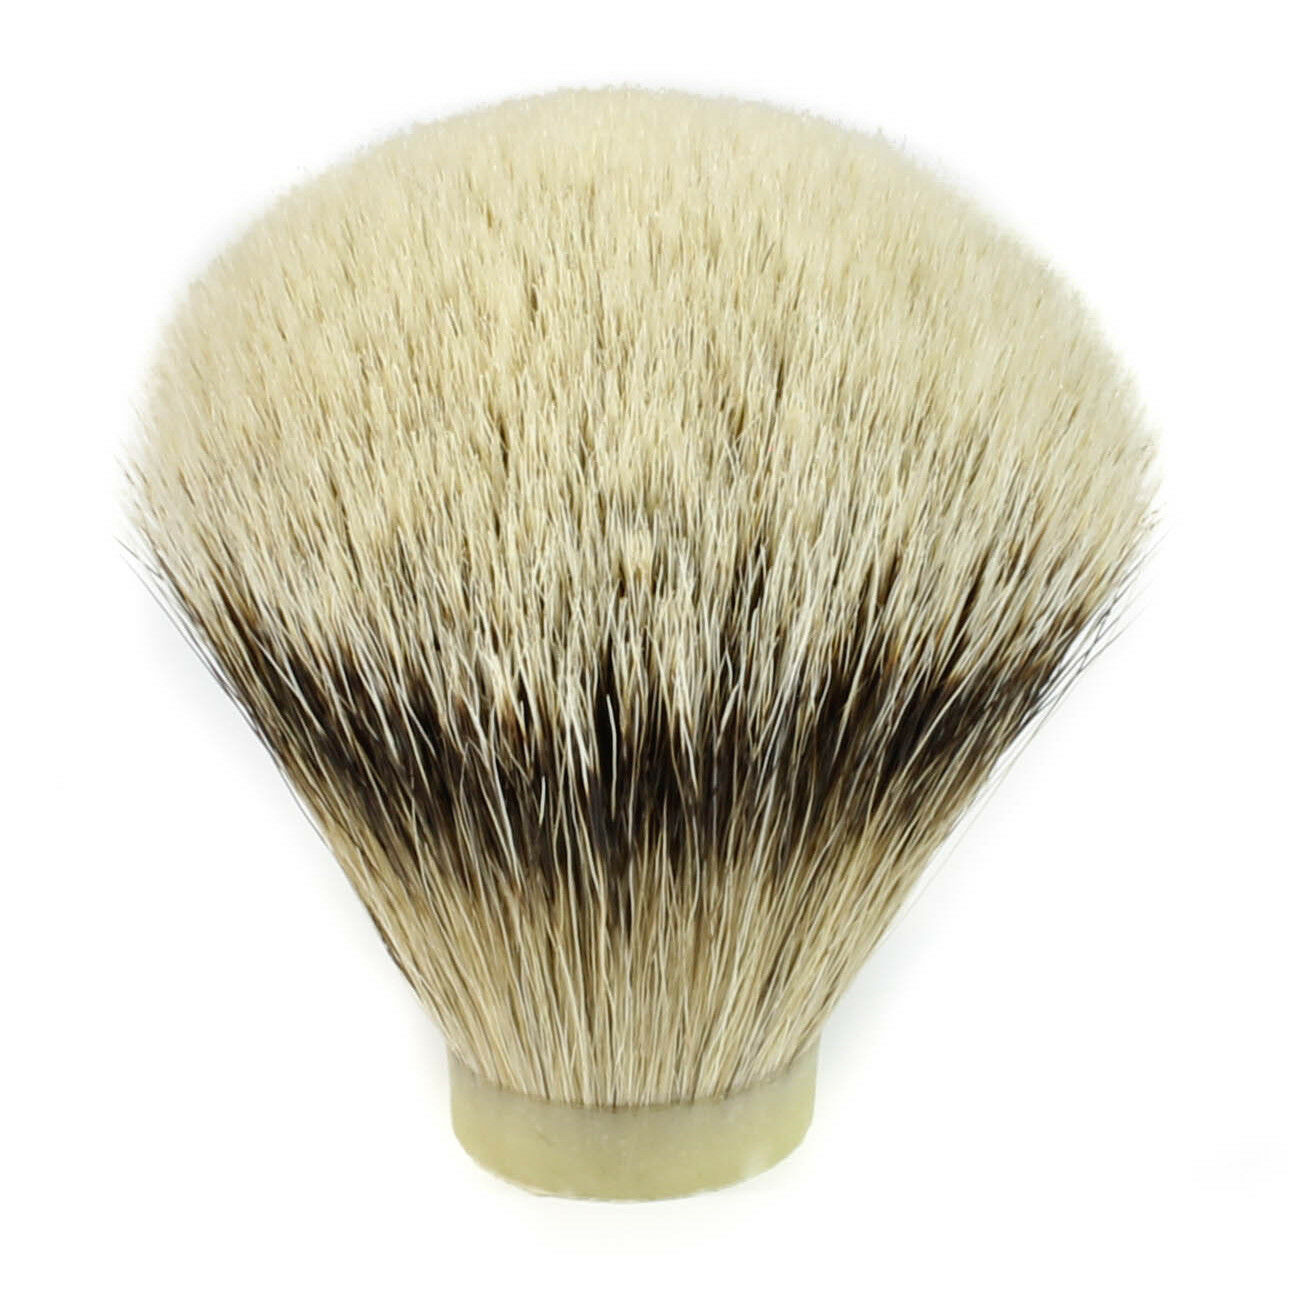 Silvertip Badger Hair Shaving Brush Knot (20mm - 28mm)